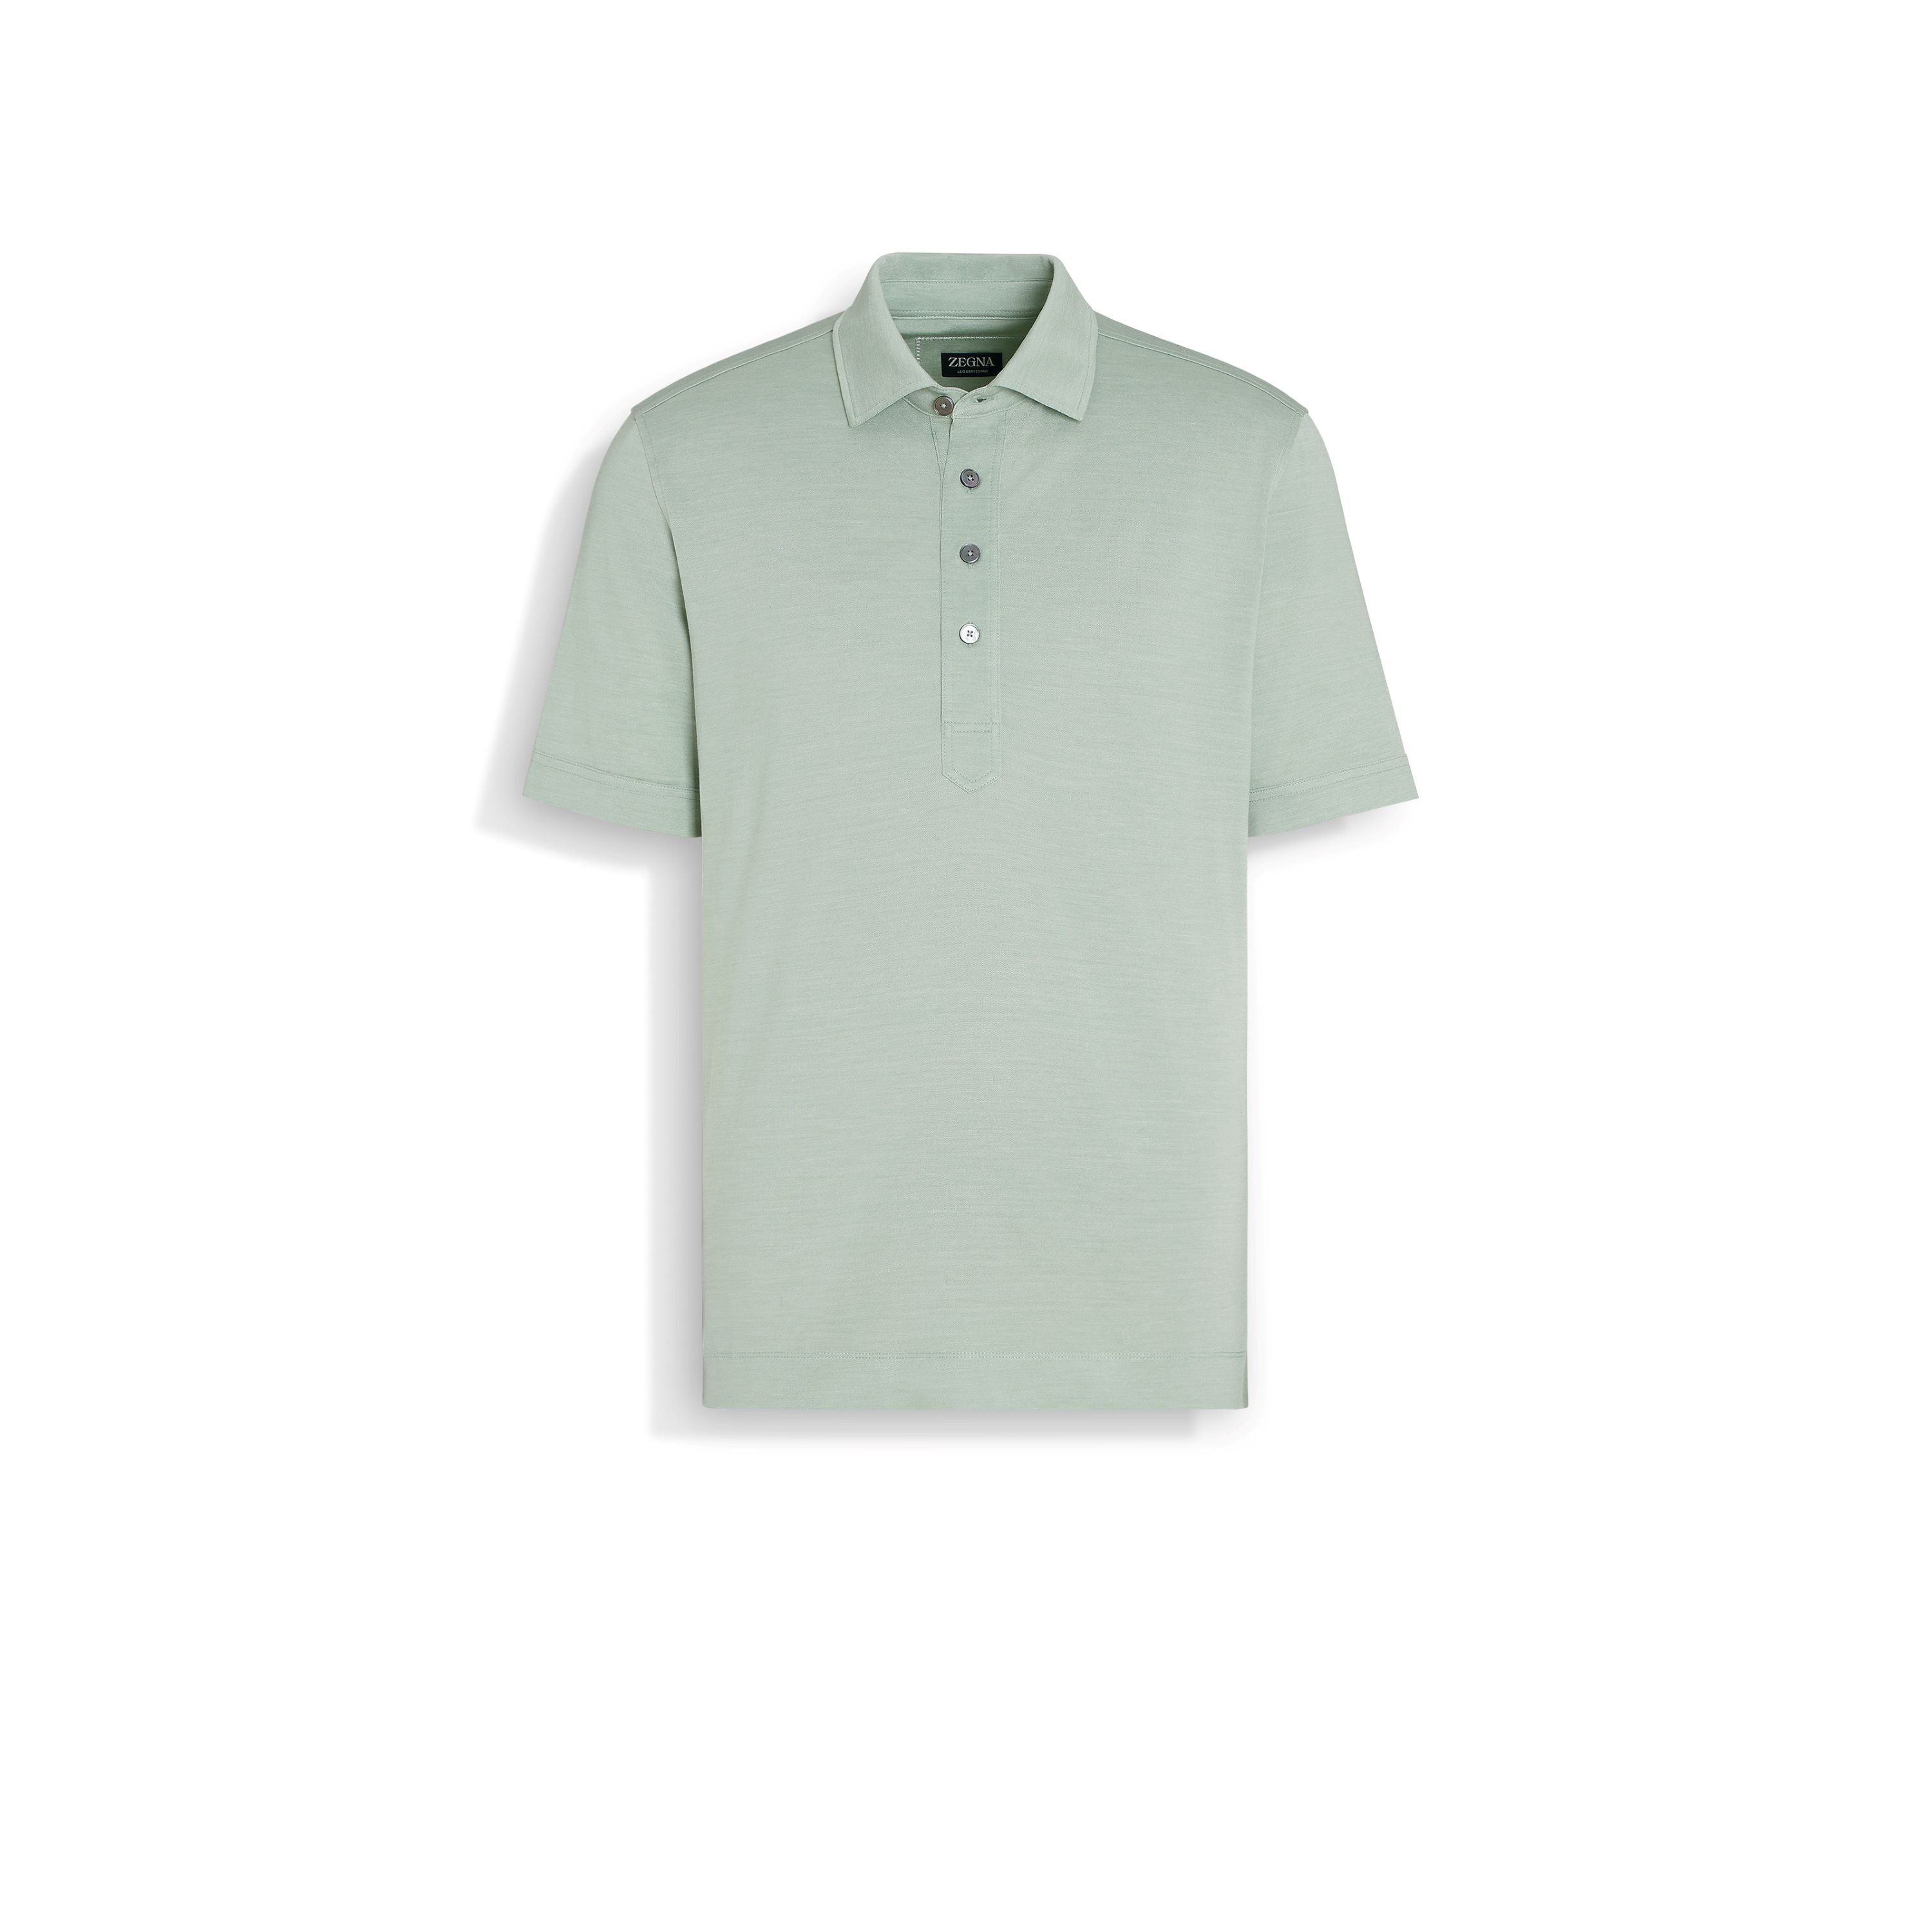 ZEGNA Sage Green Leggerissimo Silk and Cotton Polo Shirt